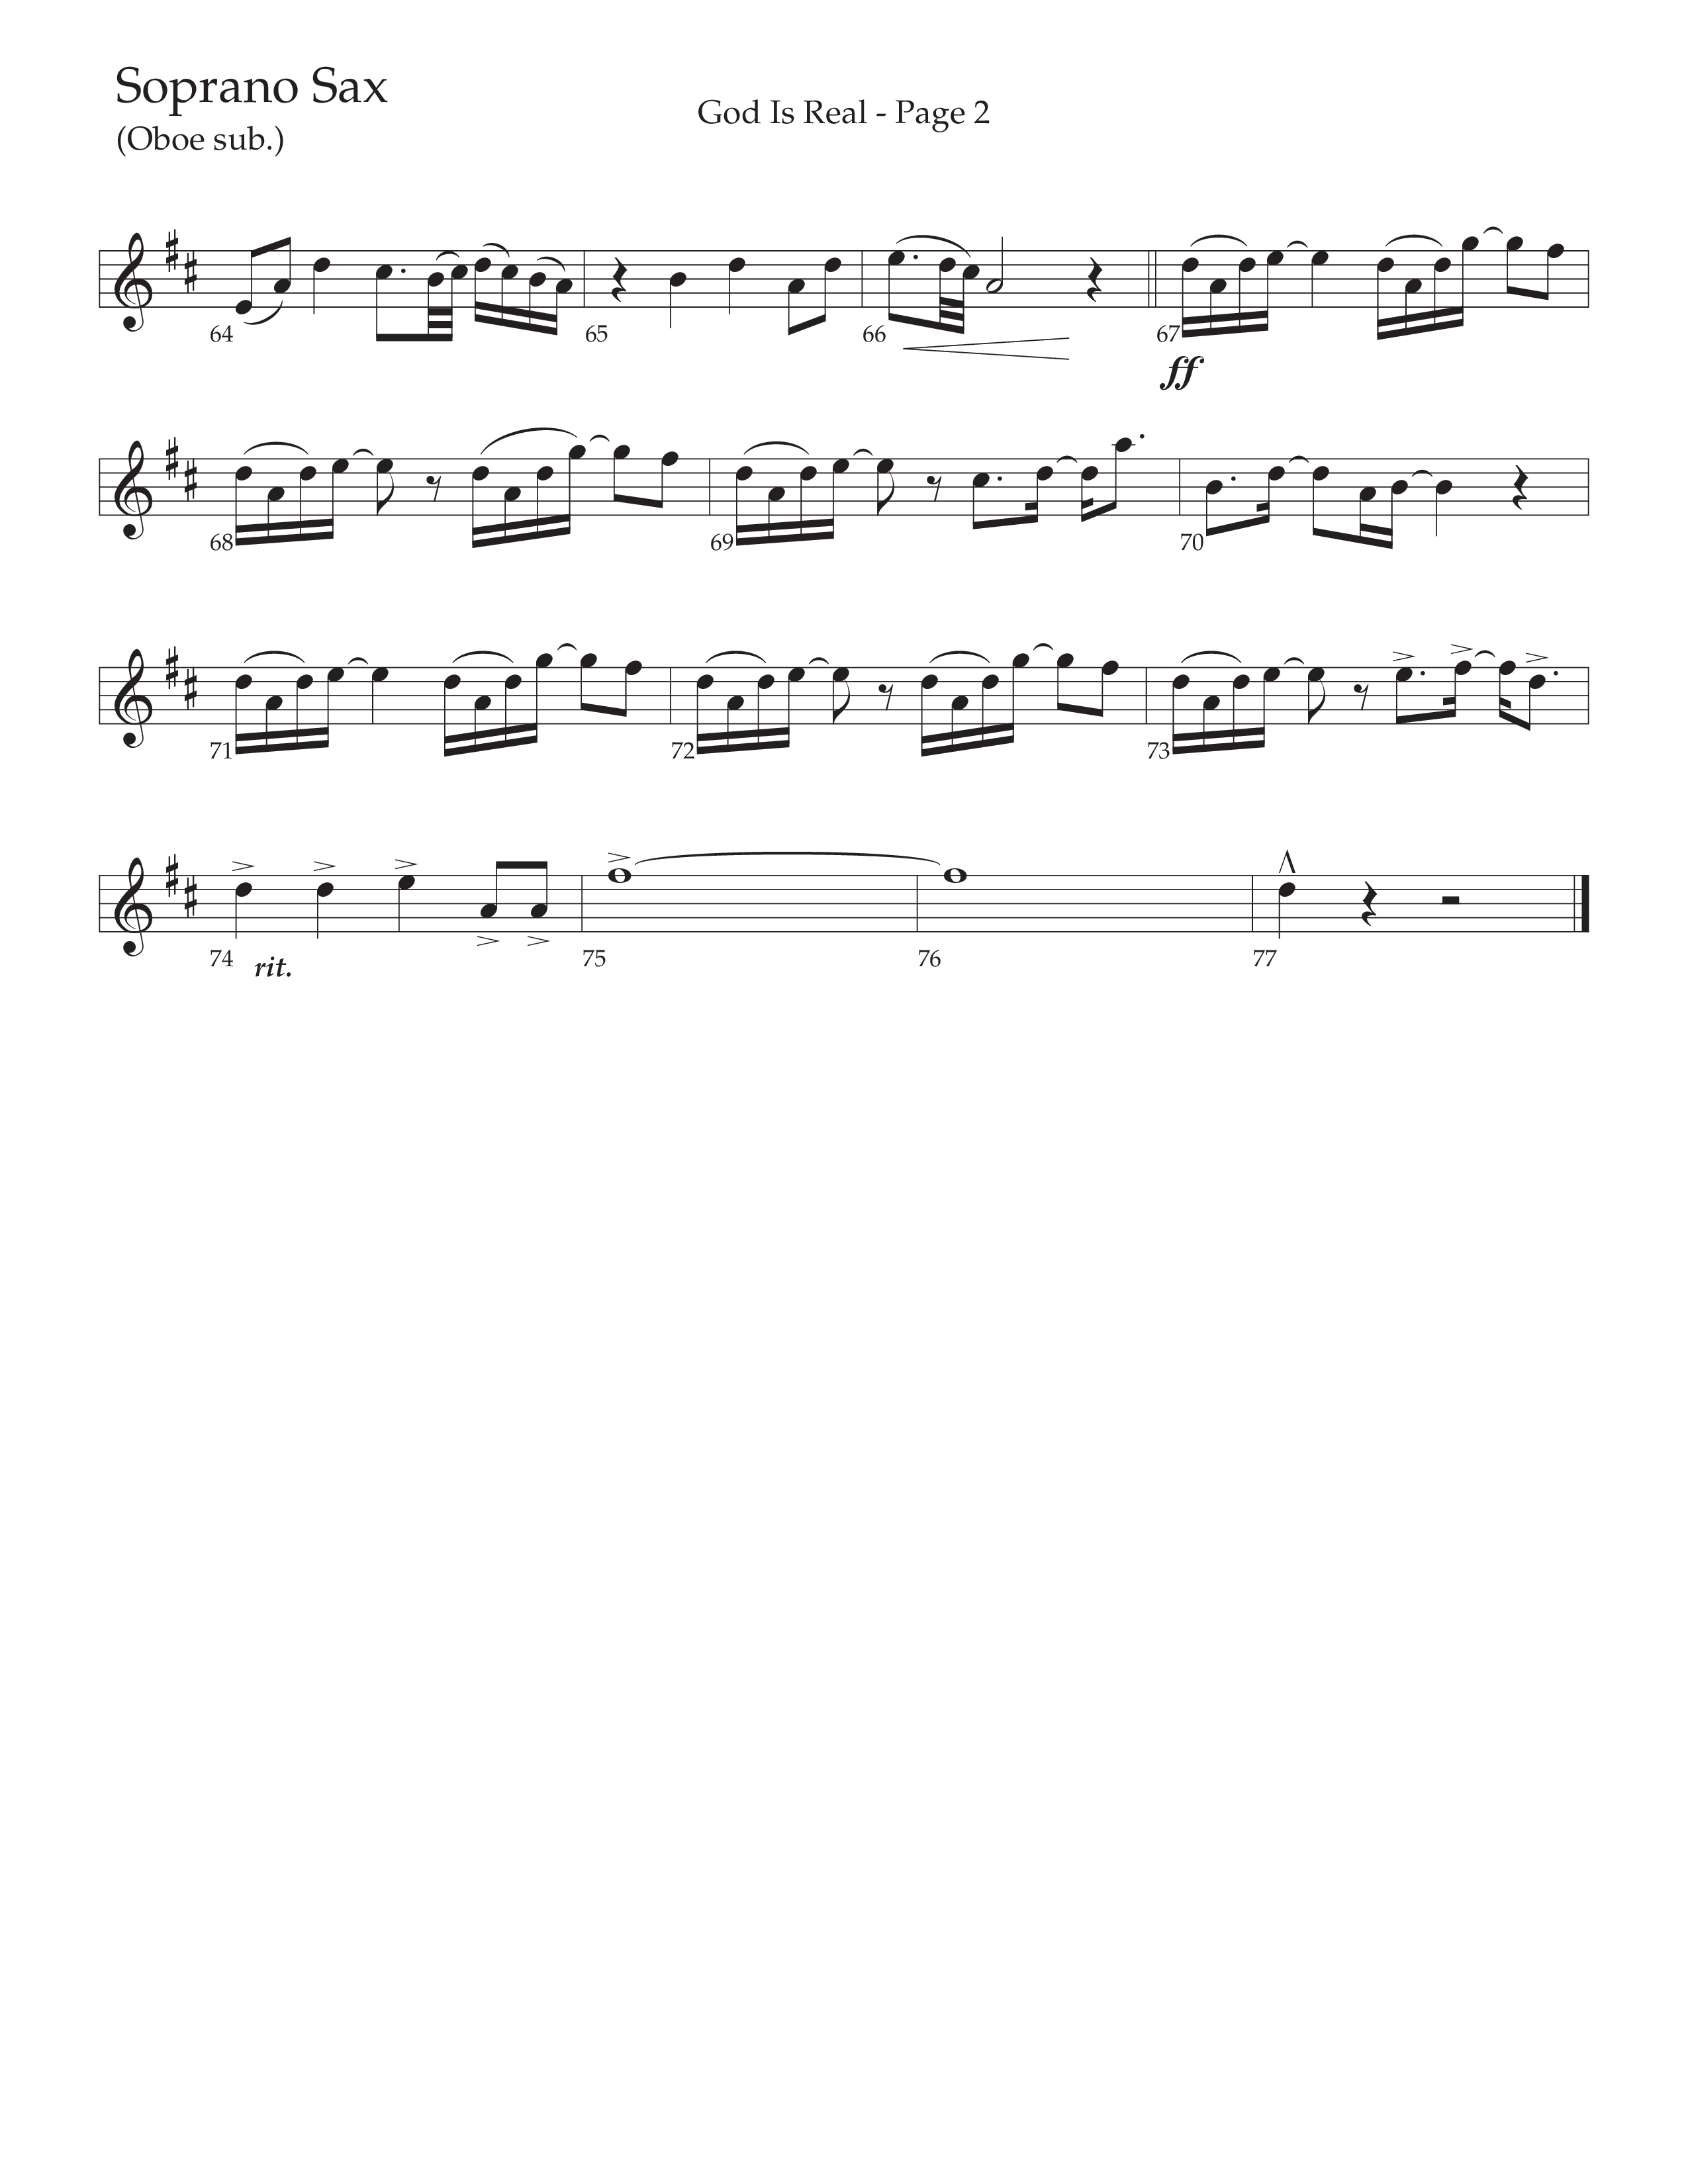 God Is Real (Choral Anthem SATB) Soprano Sax (Daywind Worship / Arr. Cliff Duren)